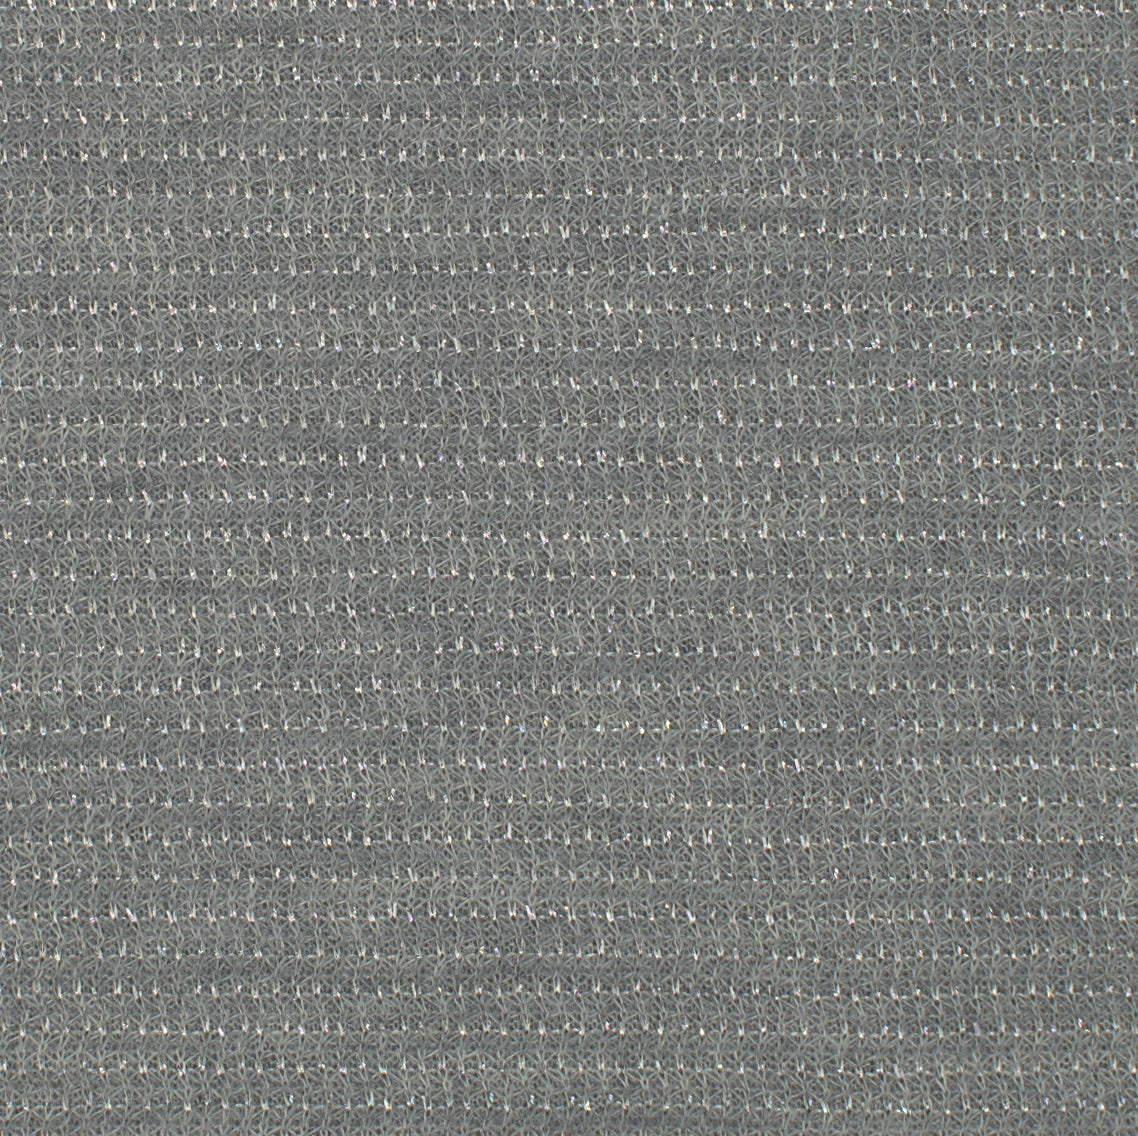 18009-03 56&quot; 240g/yd Metallic Plain Dyed Blend Knit blend green knit metallic plain dyed polyester Metallic - knit fabric - woven fabric - fabric company - fabric wholesale - fabric b2b - fabric factory - high quality fabric - hong kong fabric - fabric hk - acetate fabric - cotton fabric - linen fabric - metallic fabric - nylon fabric - polyester fabric - spandex fabric - chun wing hing - cwh hk - fabric worldwide ship - 針織布 - 梳織布 - 布料公司- 布料批發 - 香港布料 - 秦榮興